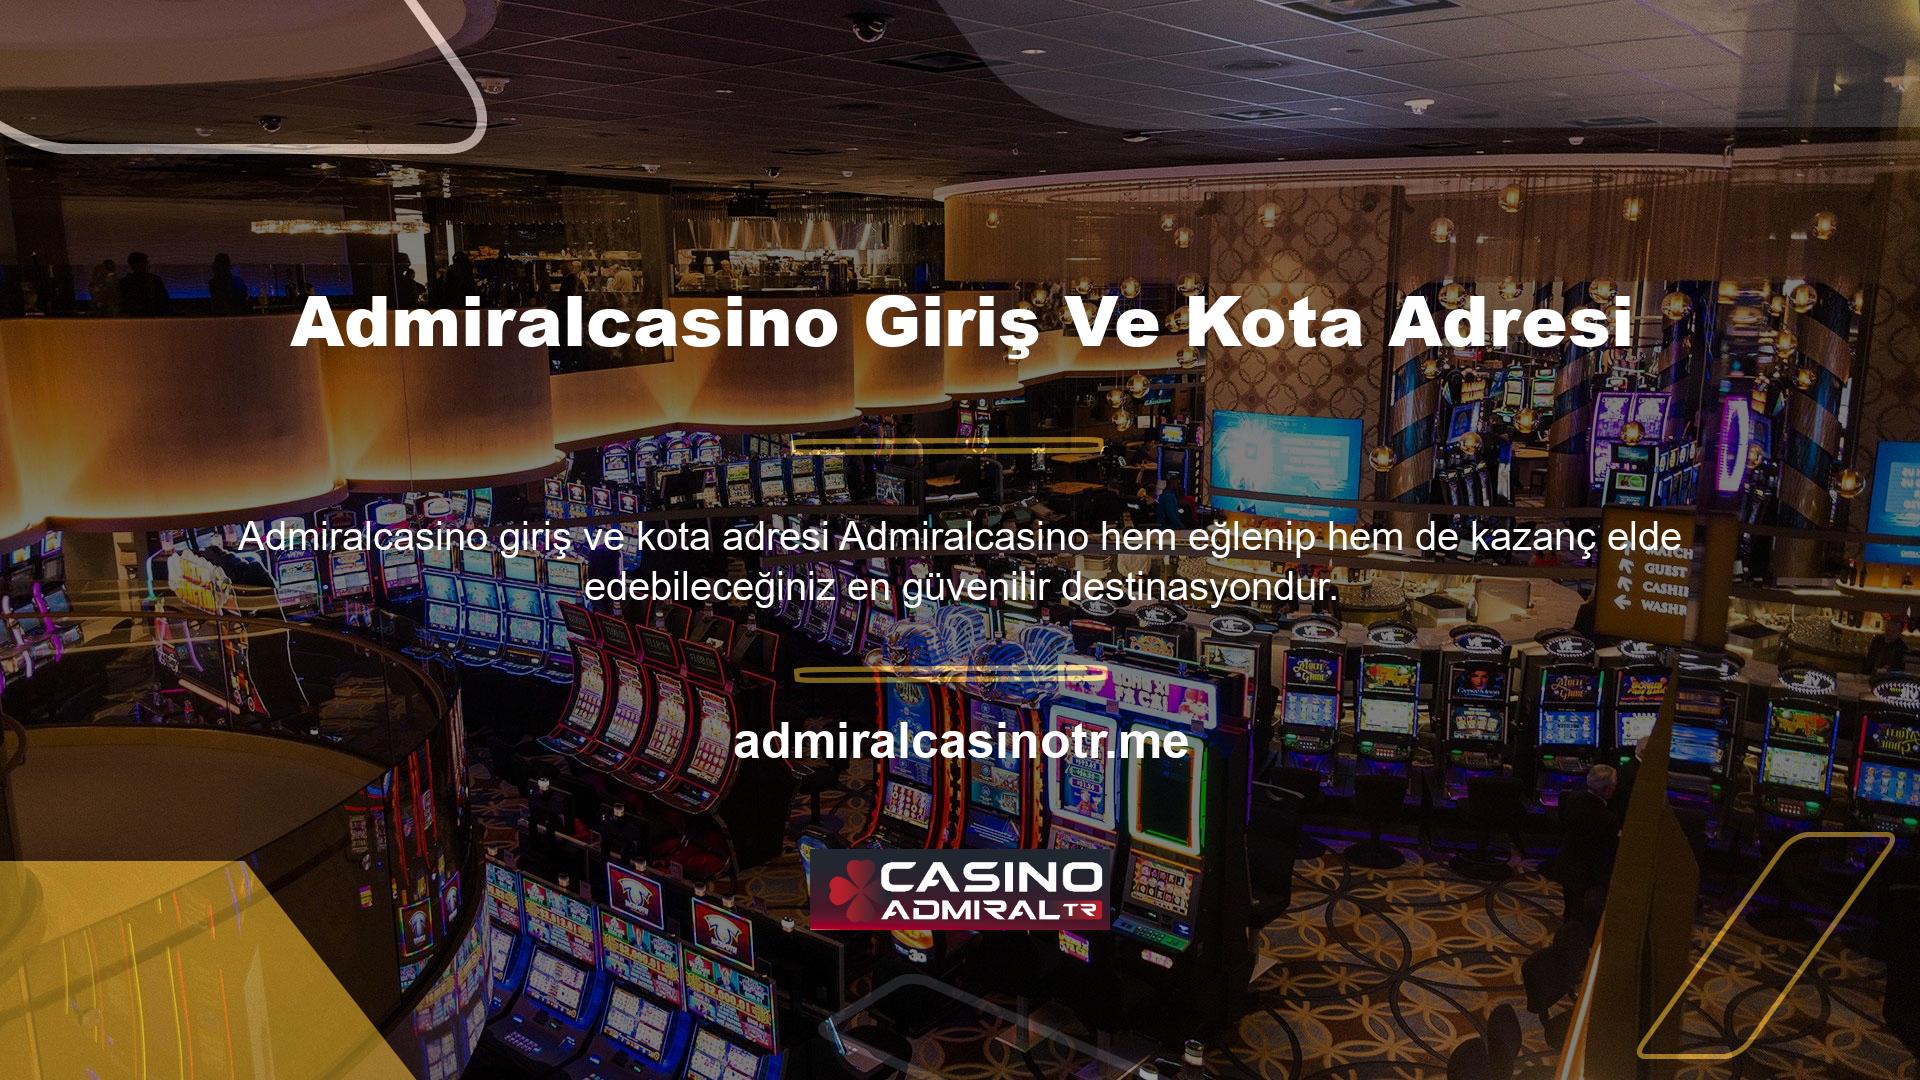 Hem bahis hem de casino oyunları için çeşitli alternatifler sunmaktadır